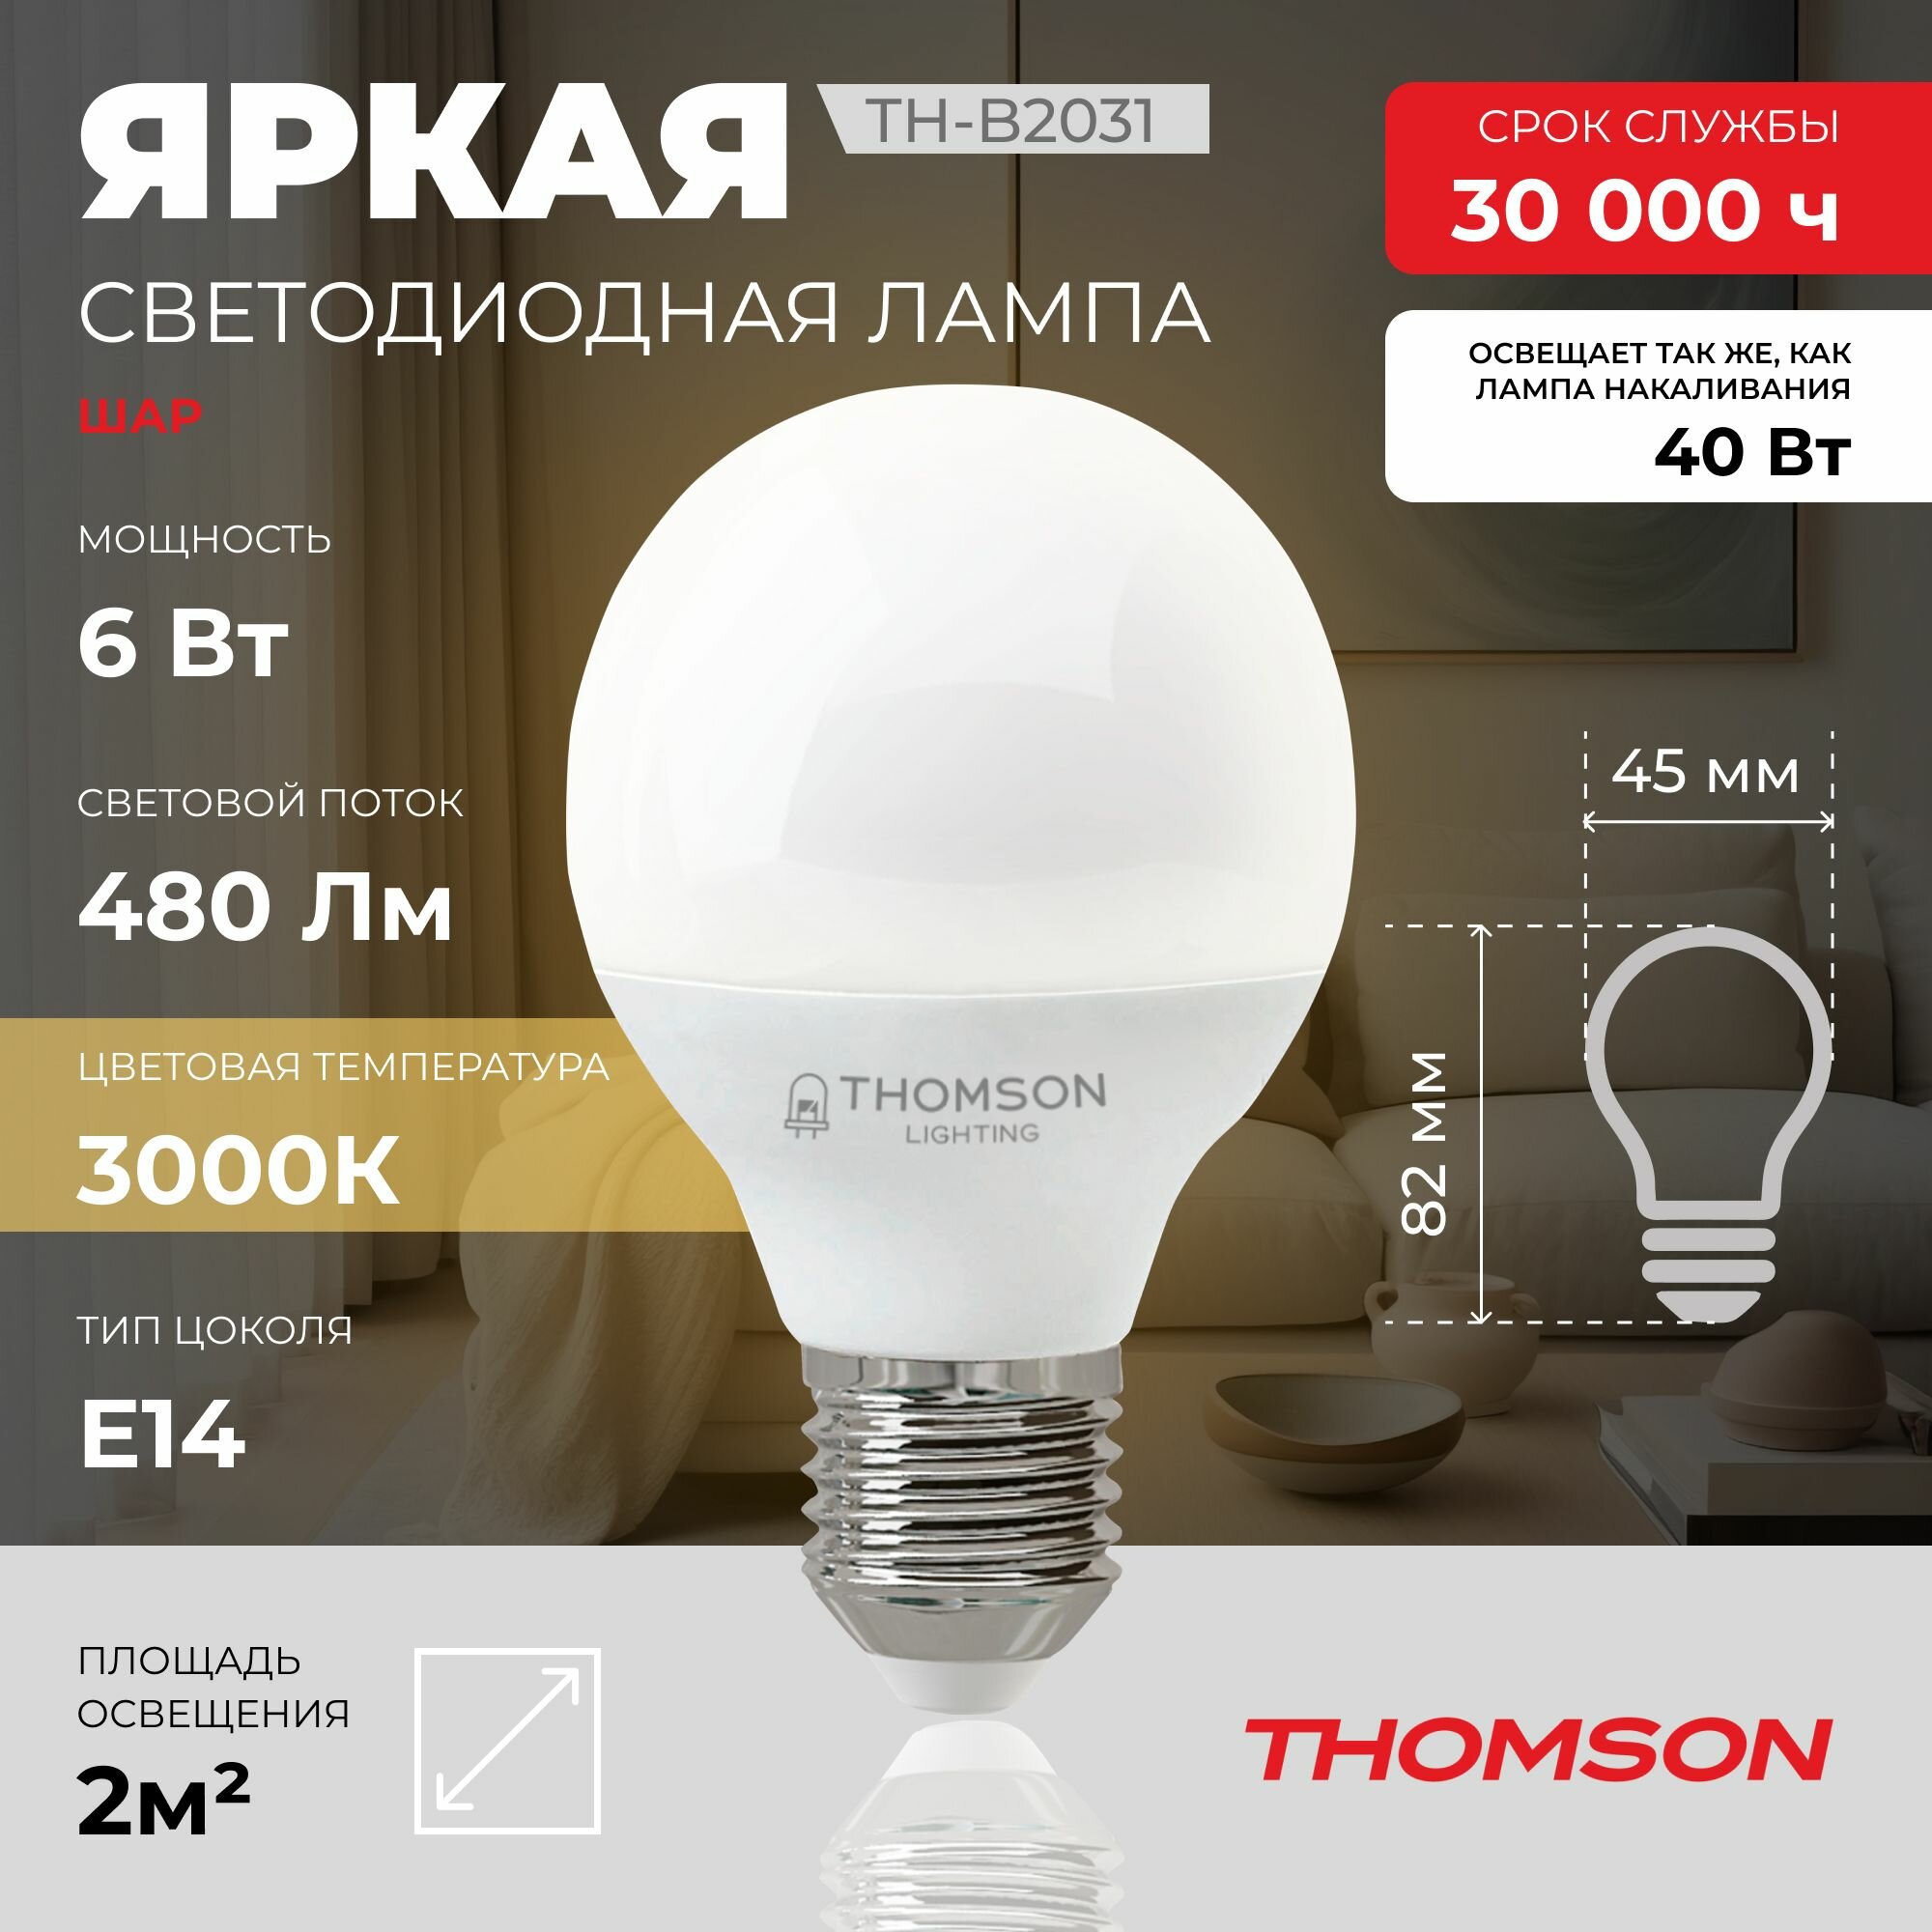 Лампочка Thomson TH-B2031 6 Вт, E14, 3000K, шар, теплый белый свет